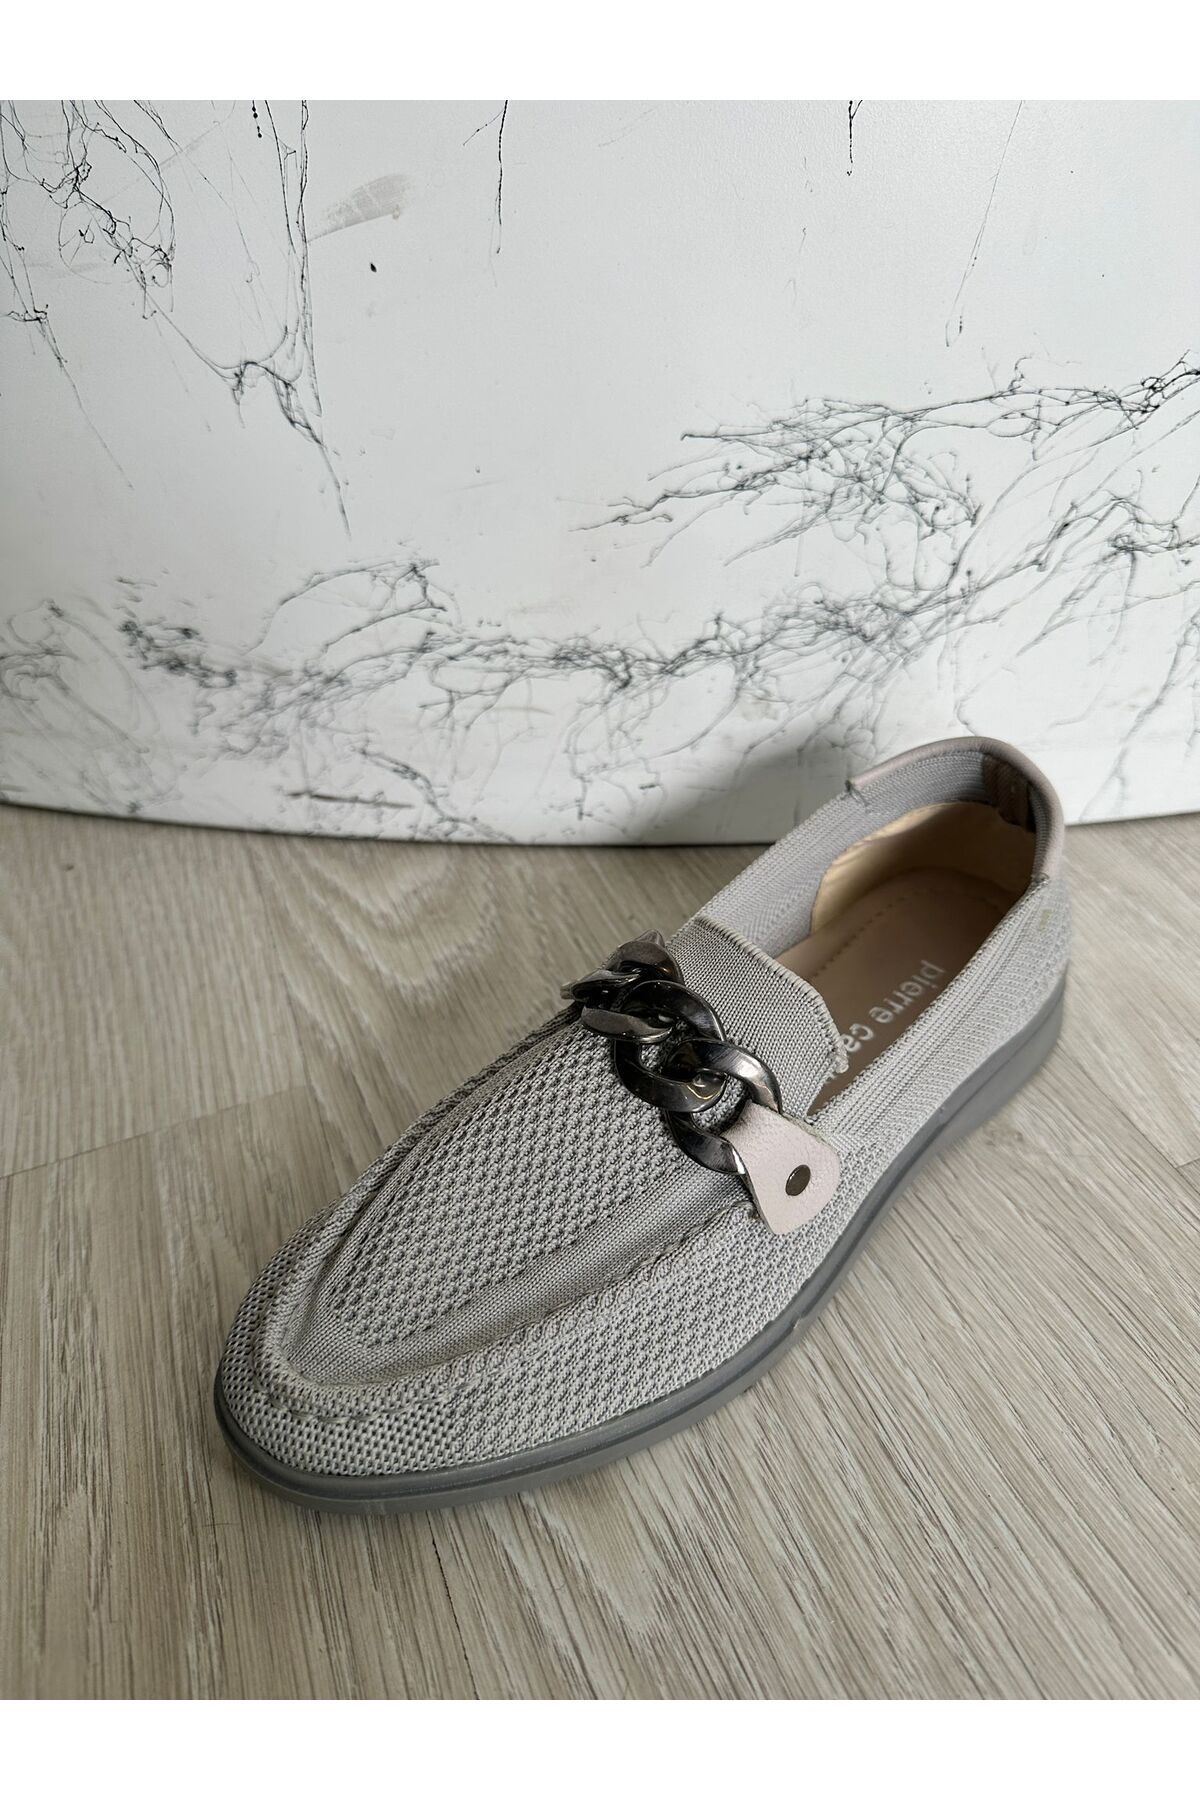 Pierre Cardin Pc-51901 Bej Günlük Rahat Kumaş Babet Ayakkabı